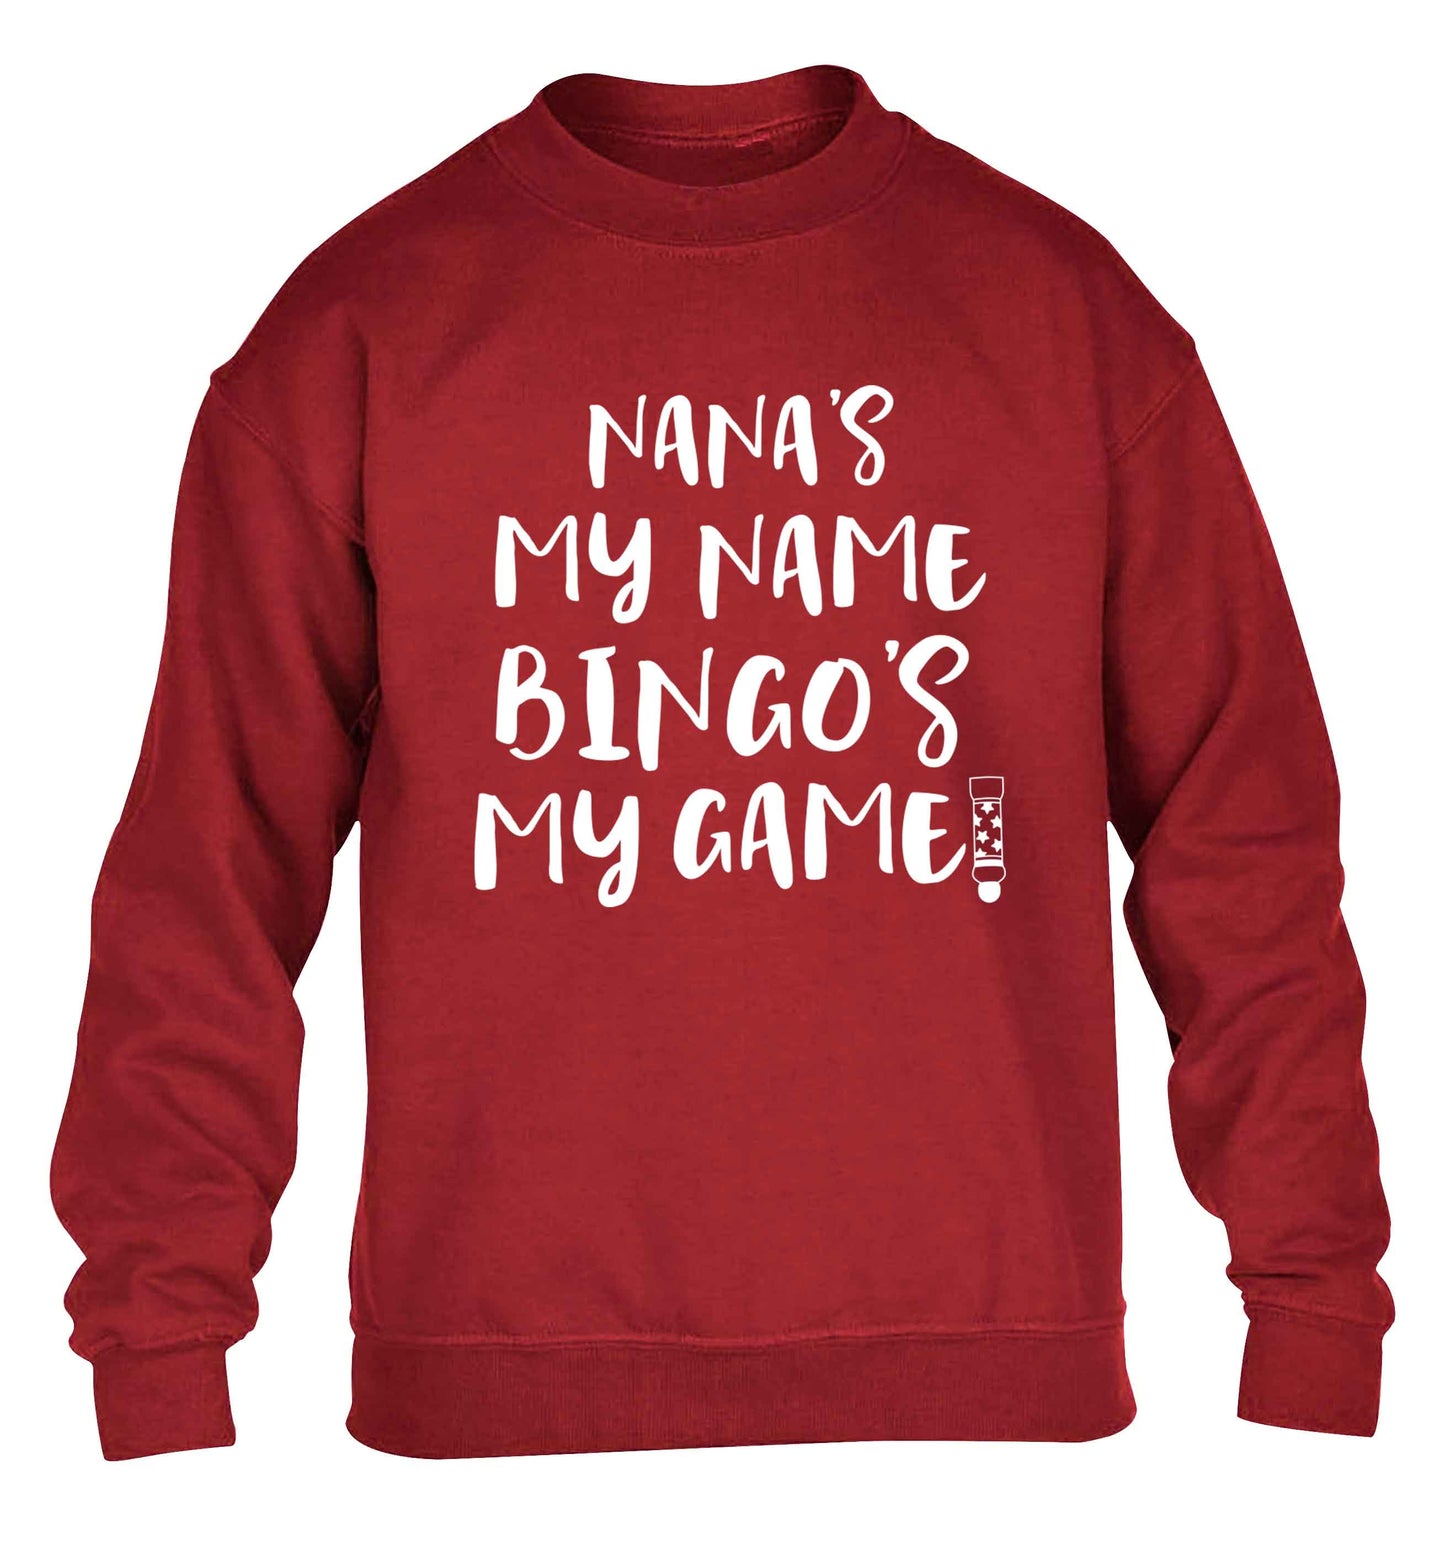 Nana's my name bingo's my game! children's grey sweater 12-13 Years